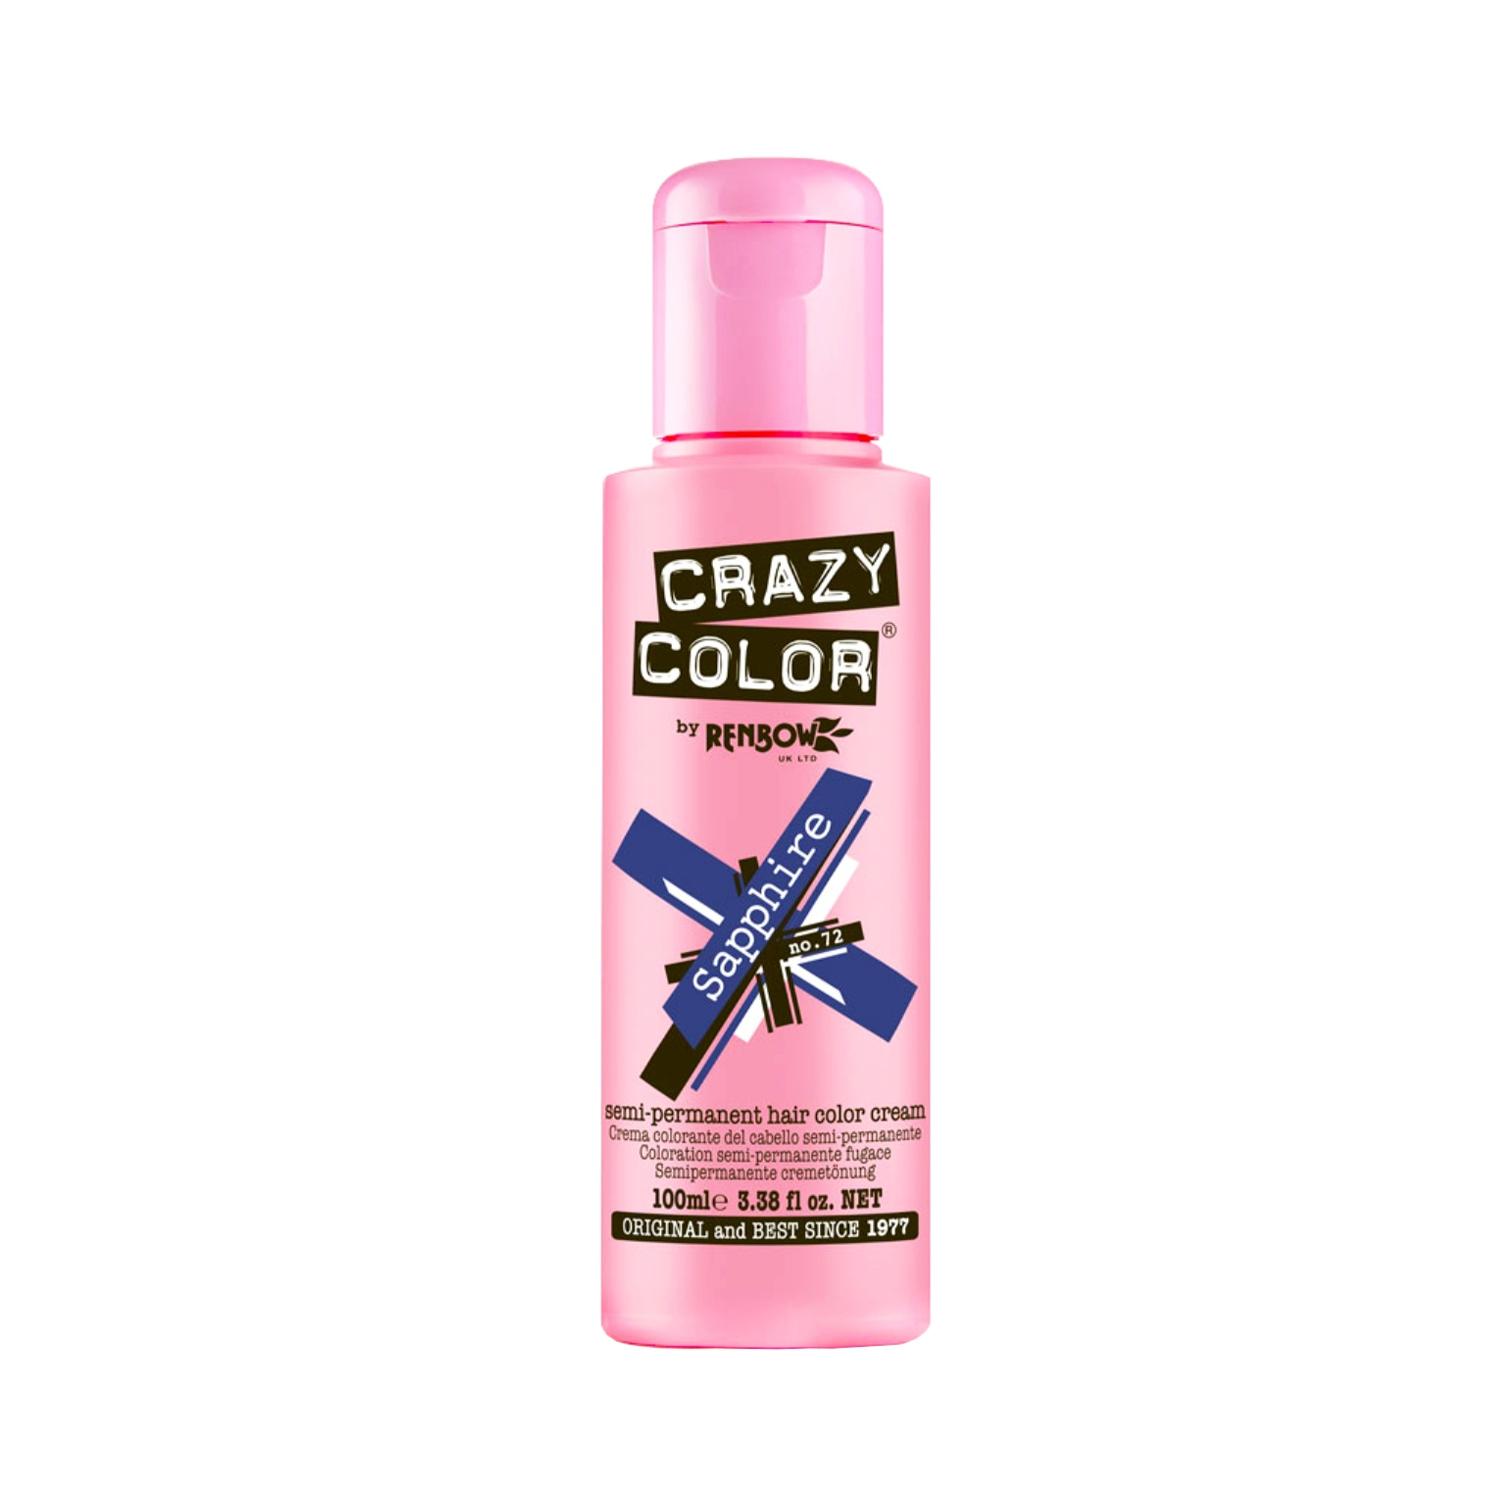 Crazy Color Semi Permanent Hair Color Cream - 72 Sapphire (100ml)